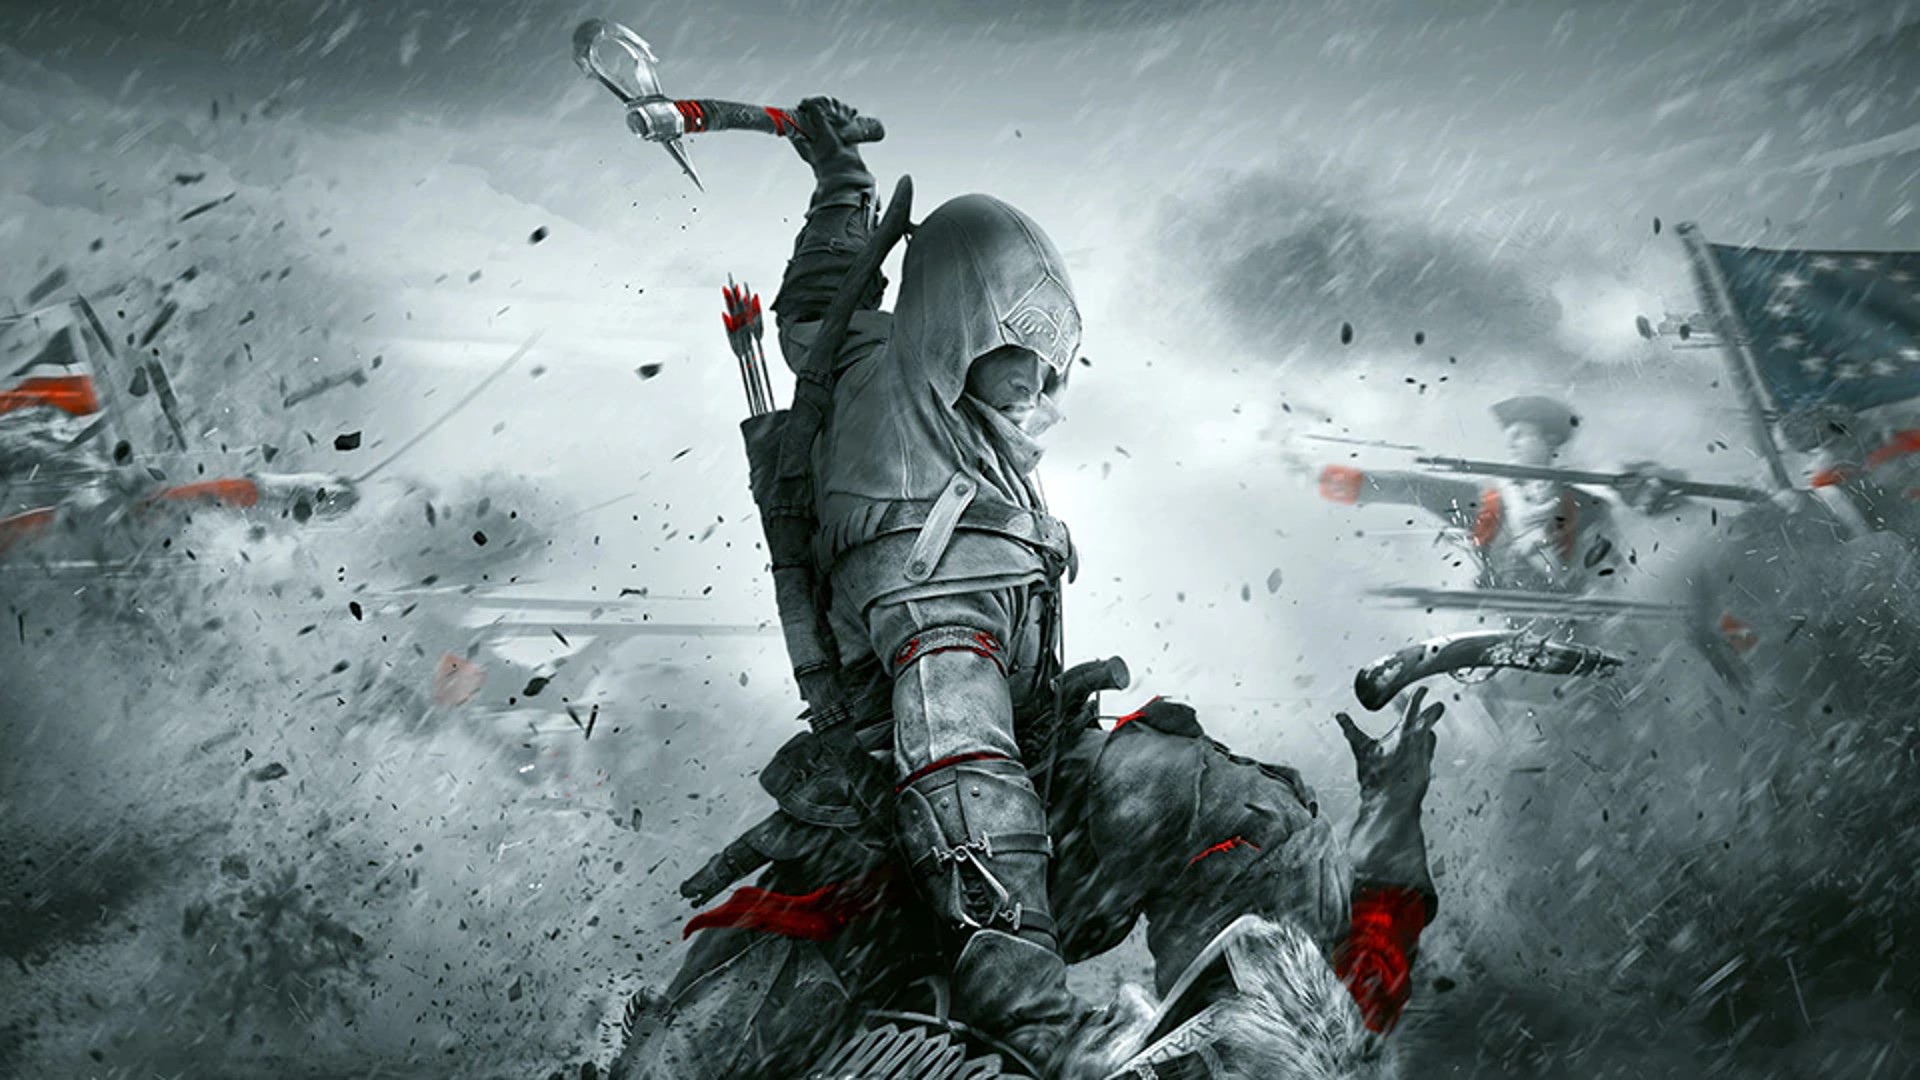 นักข่าว Bloomberg เผย Assassin’s Creed ภาคใหม่เรื่องราวอยู่ใน Baghdad ไม่ใช่อารยธรรม Aztecs